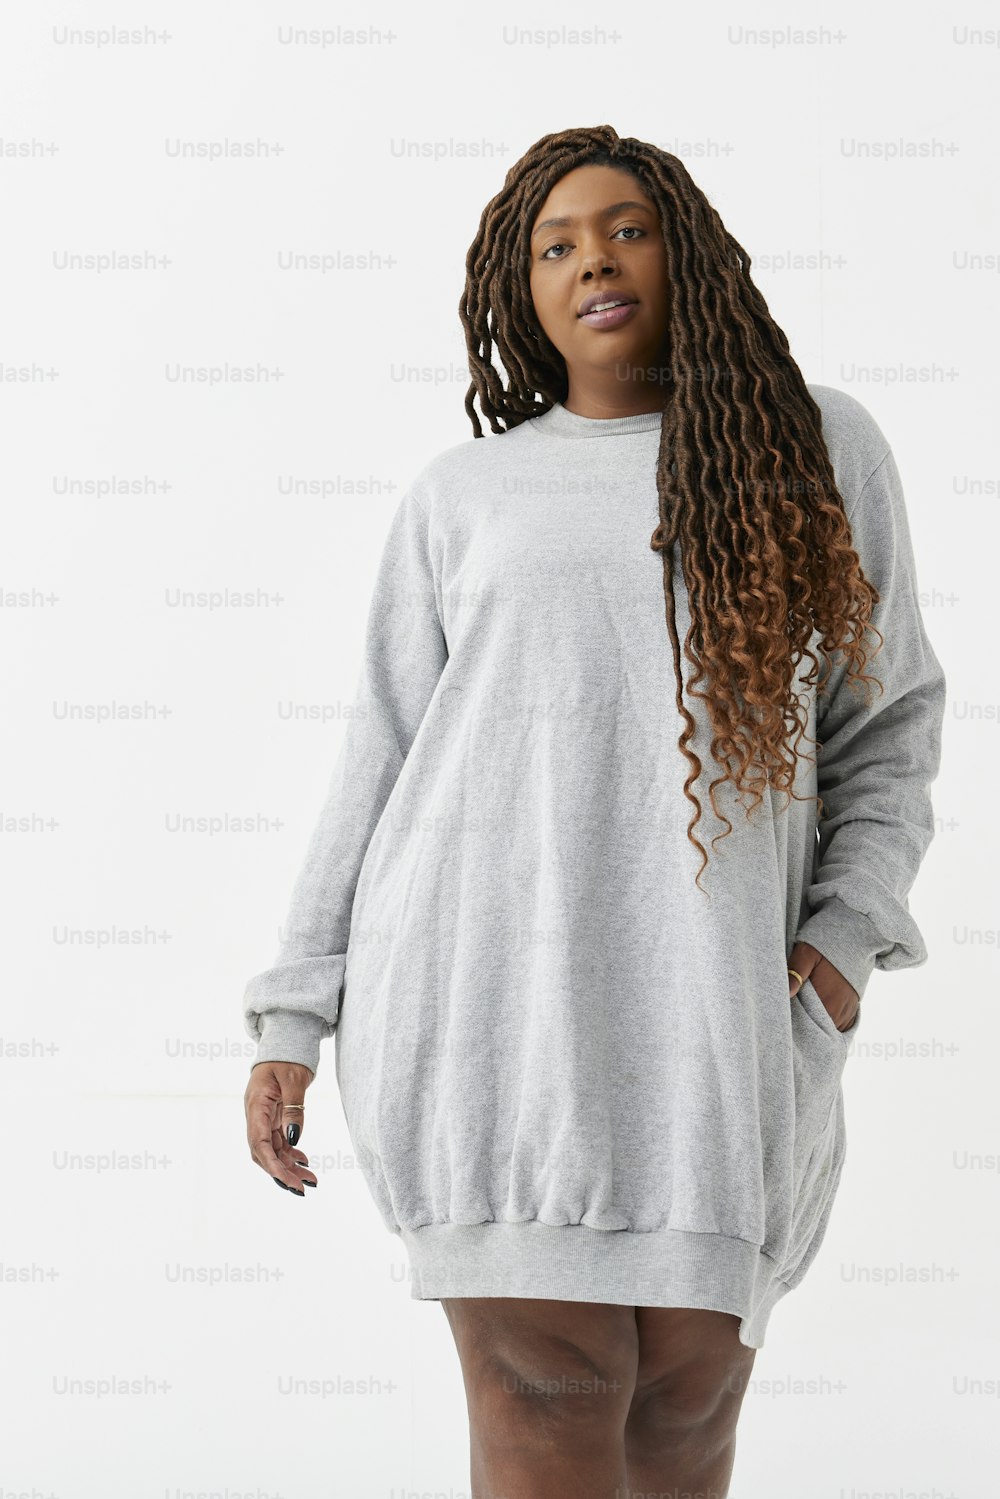 eine Frau in einem grauen Sweatshirt-Kleid